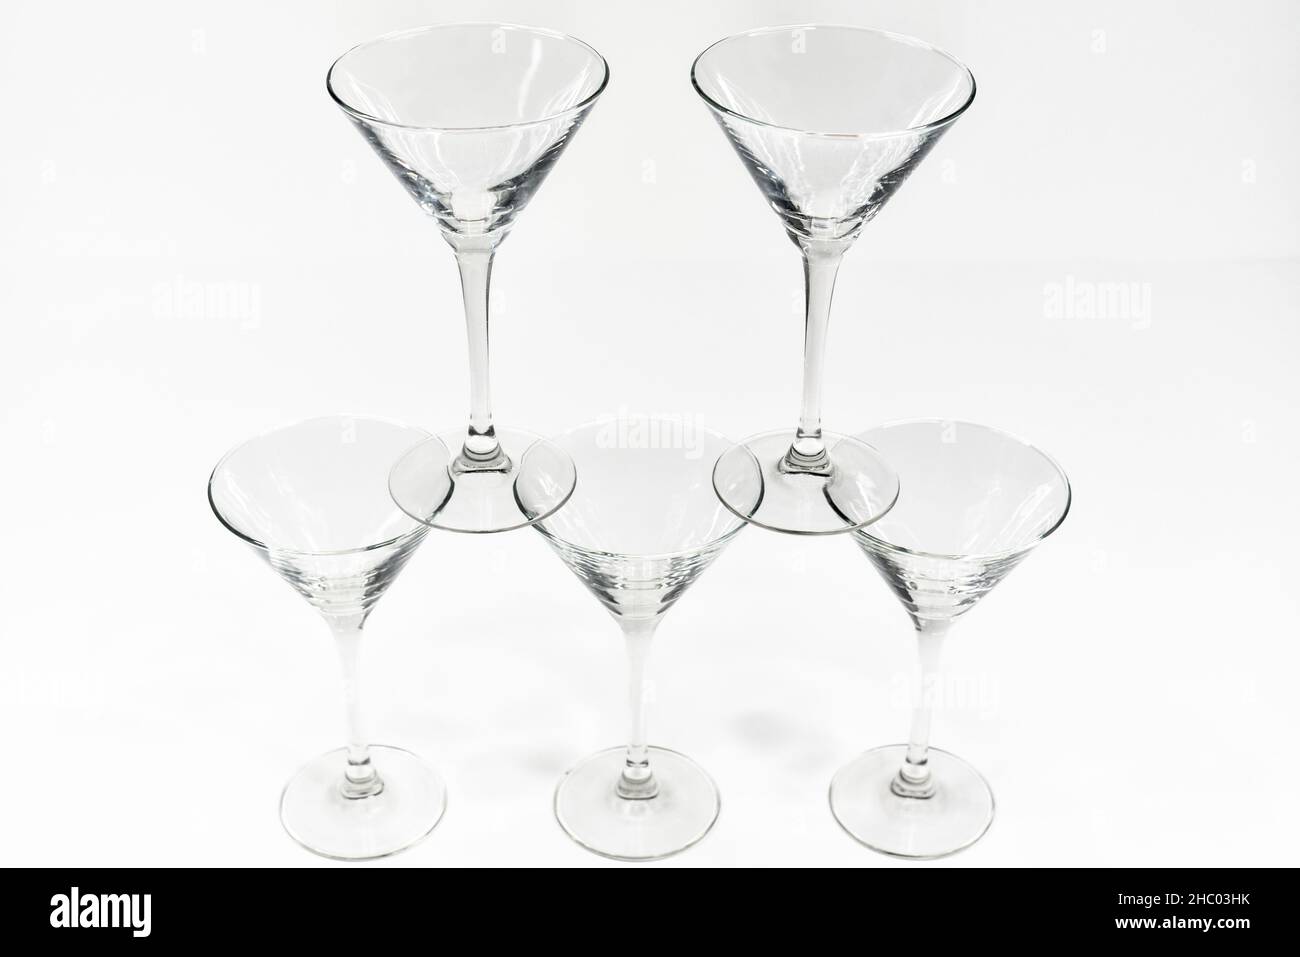 Les verres à cocktail martini vides se tiennent l'un sur l'autre sur fond blanc Banque D'Images